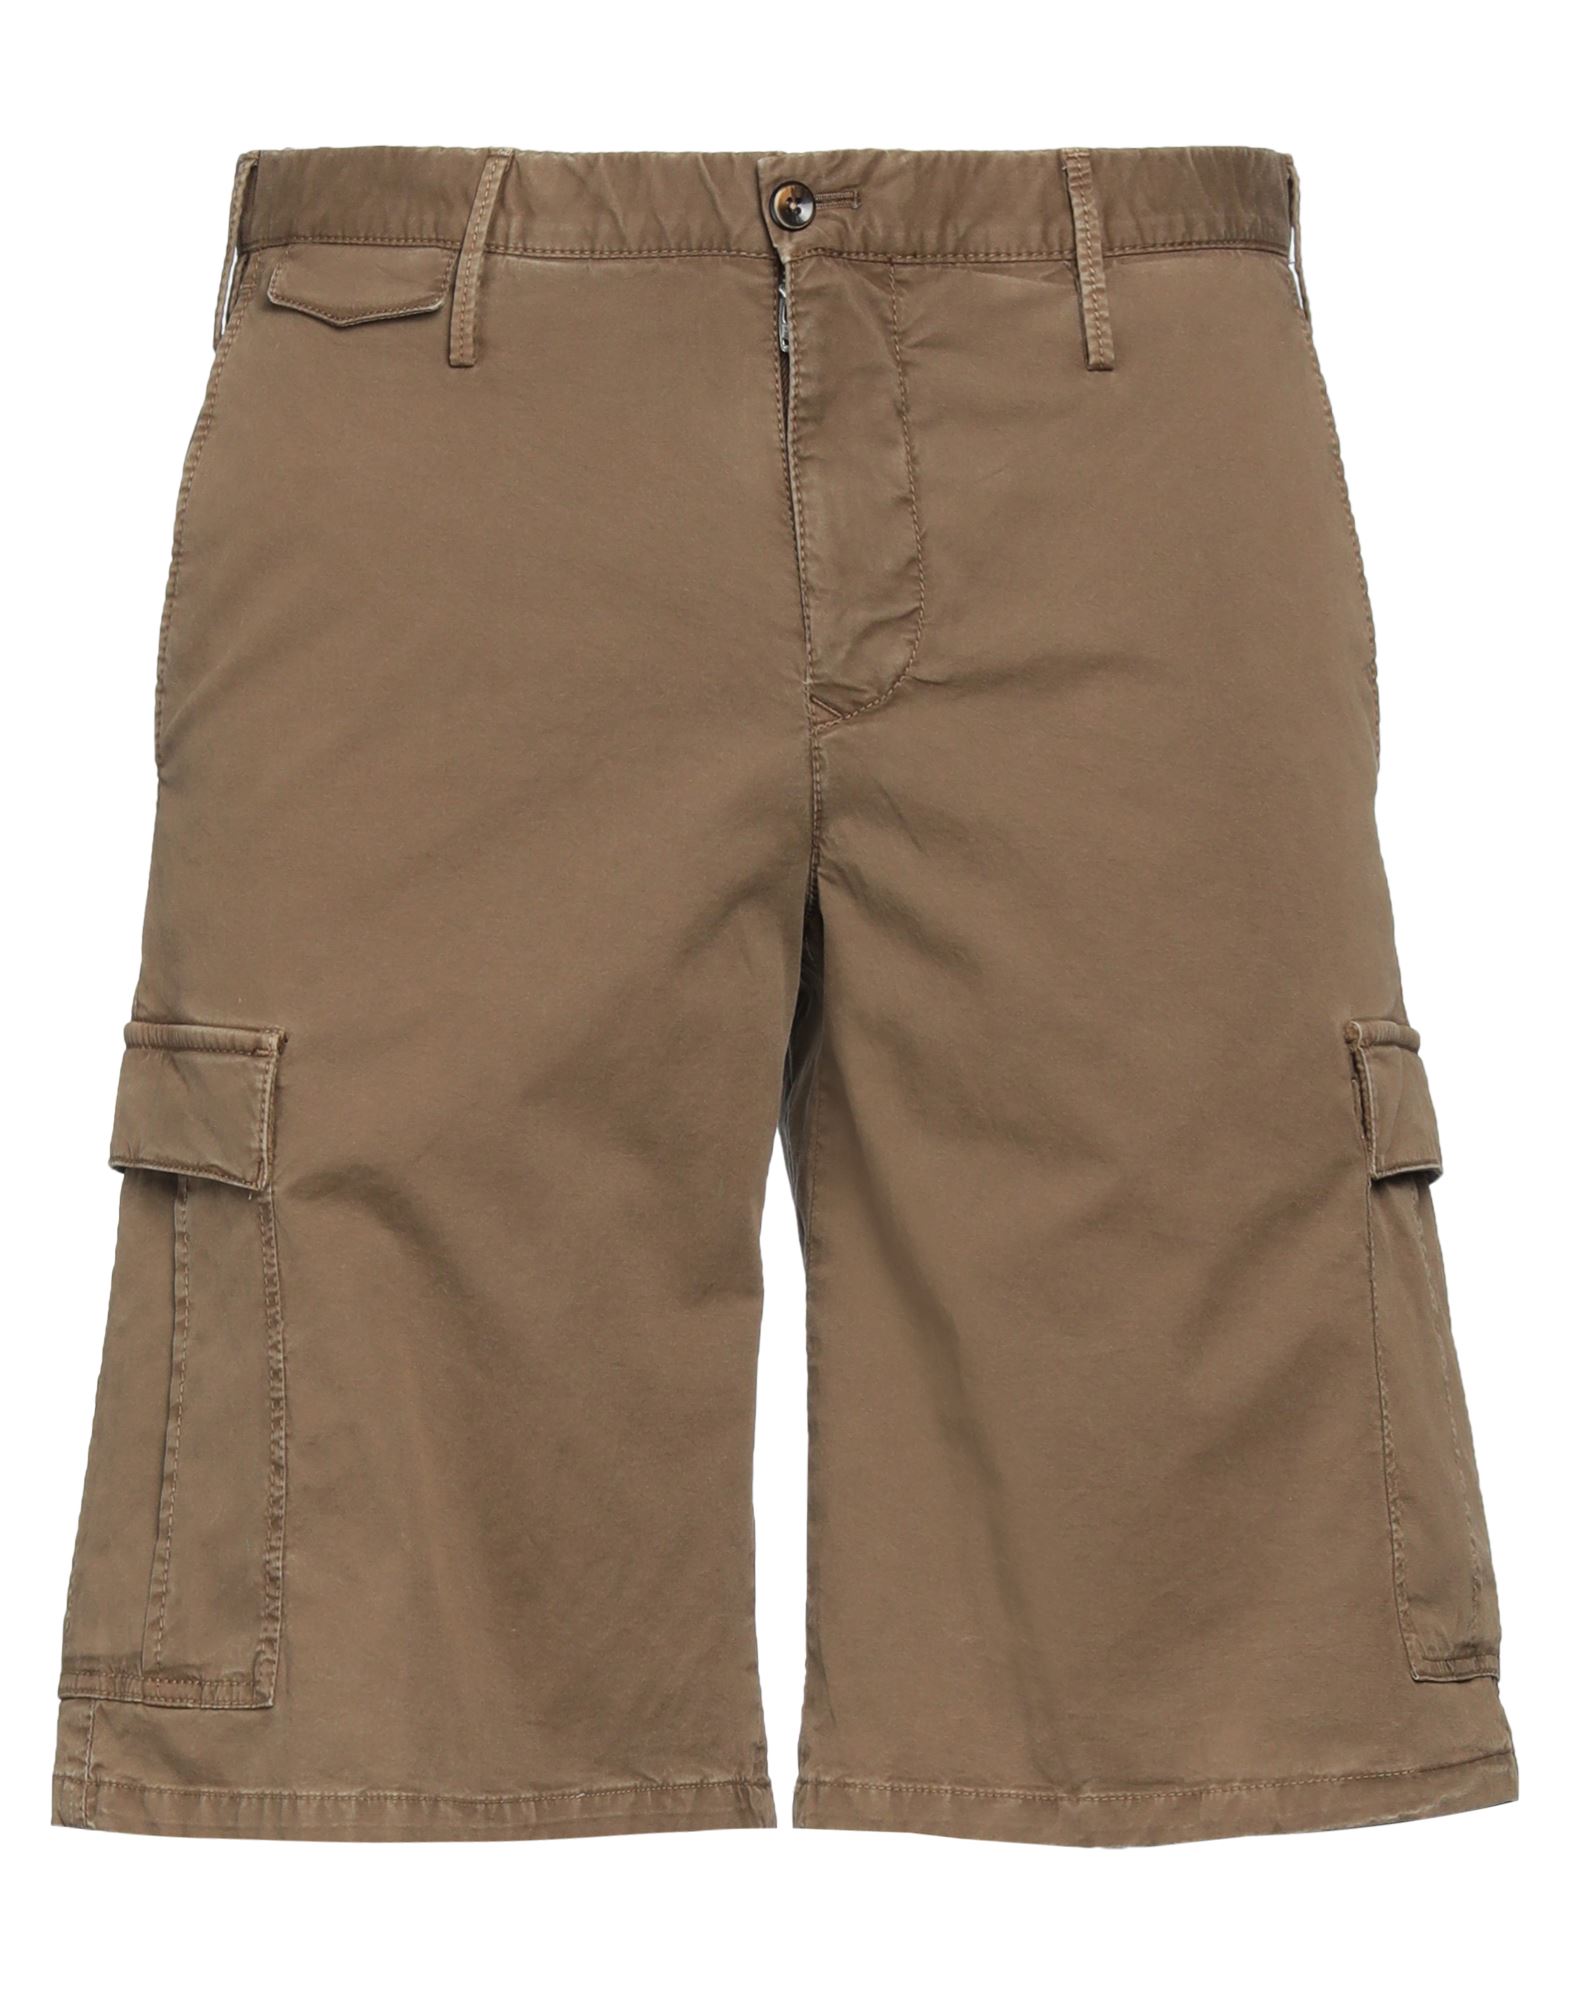 Pt Torino Man Shorts & Bermuda Shorts Brown Size 34 Cotton, Elastane